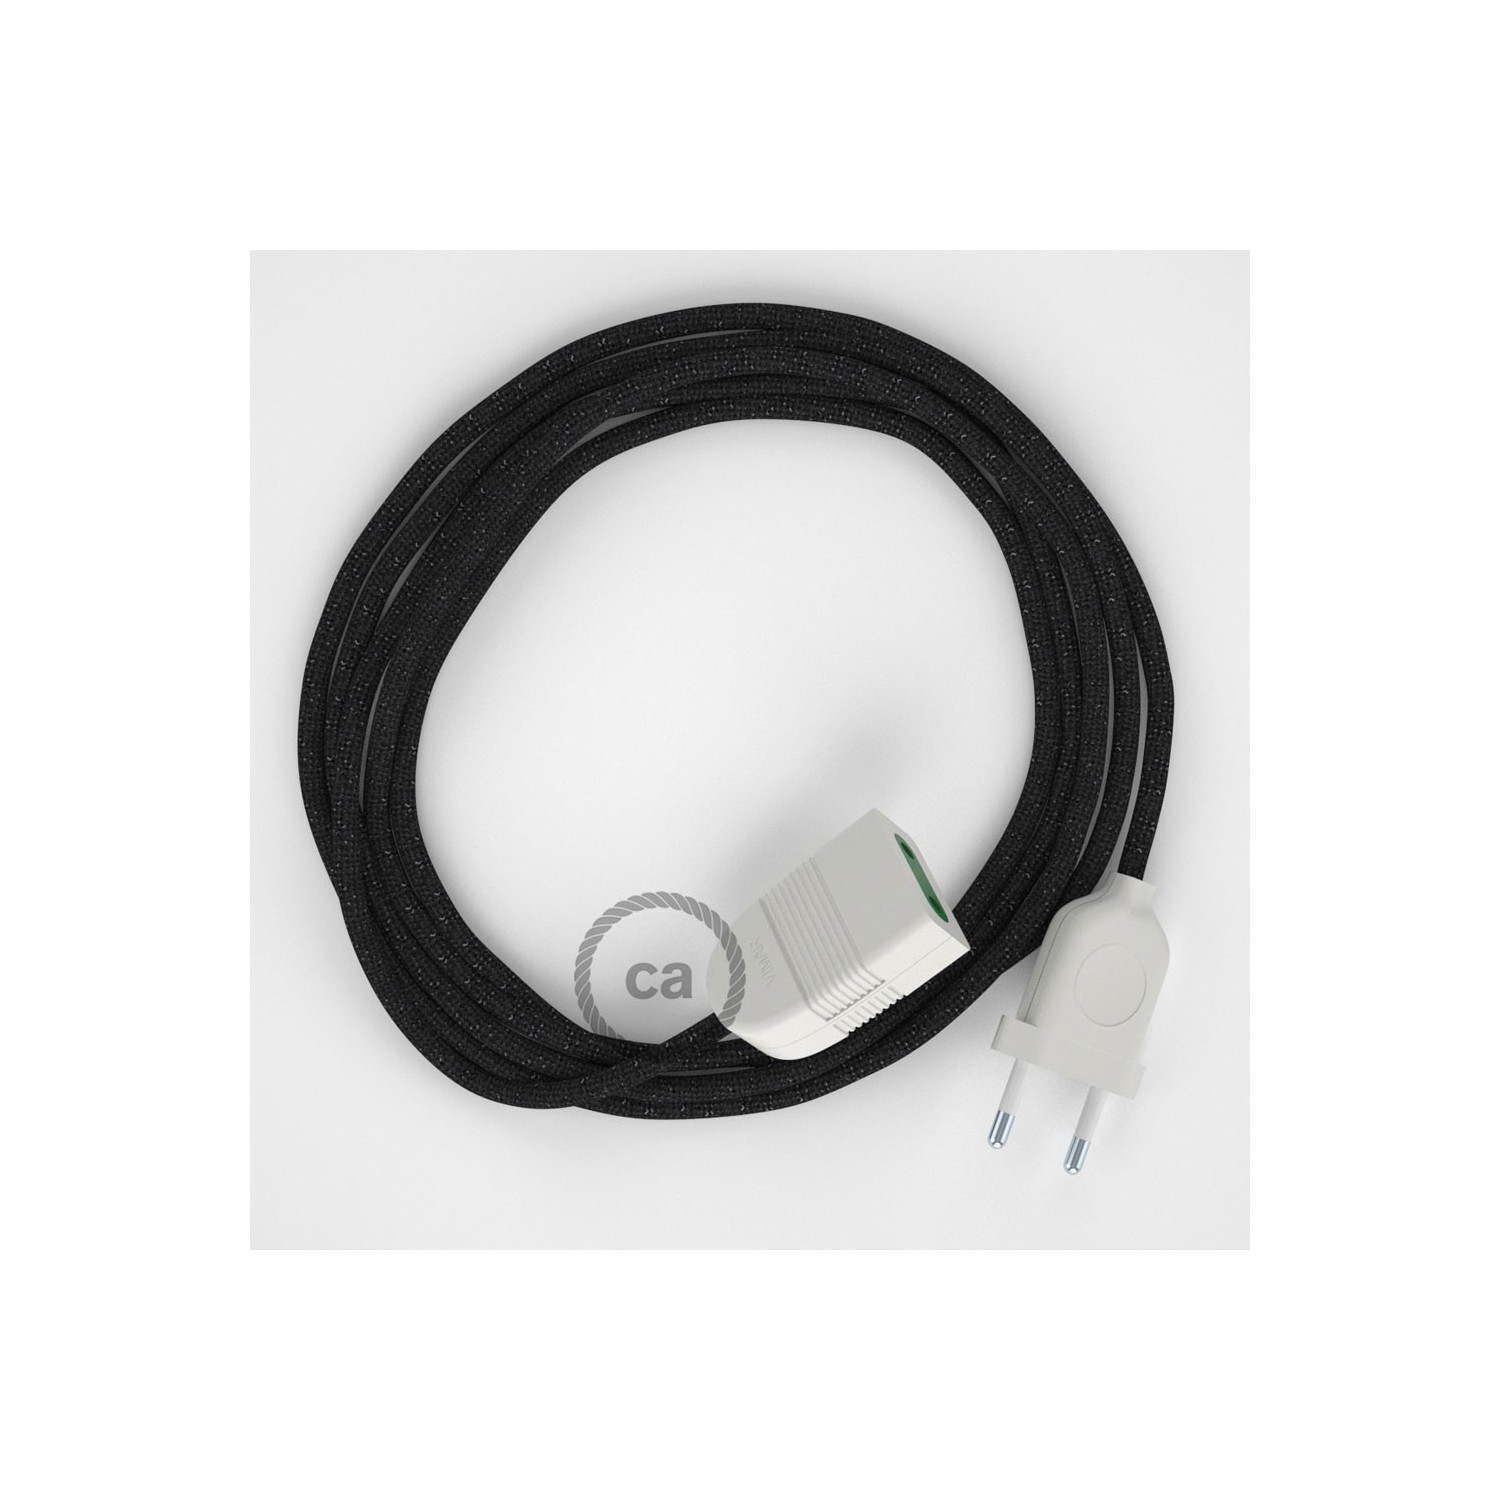 Rallonge électrique avec câble textile RL04 Effet Soie Paillettes Noir 2P 10A Made in Italy.